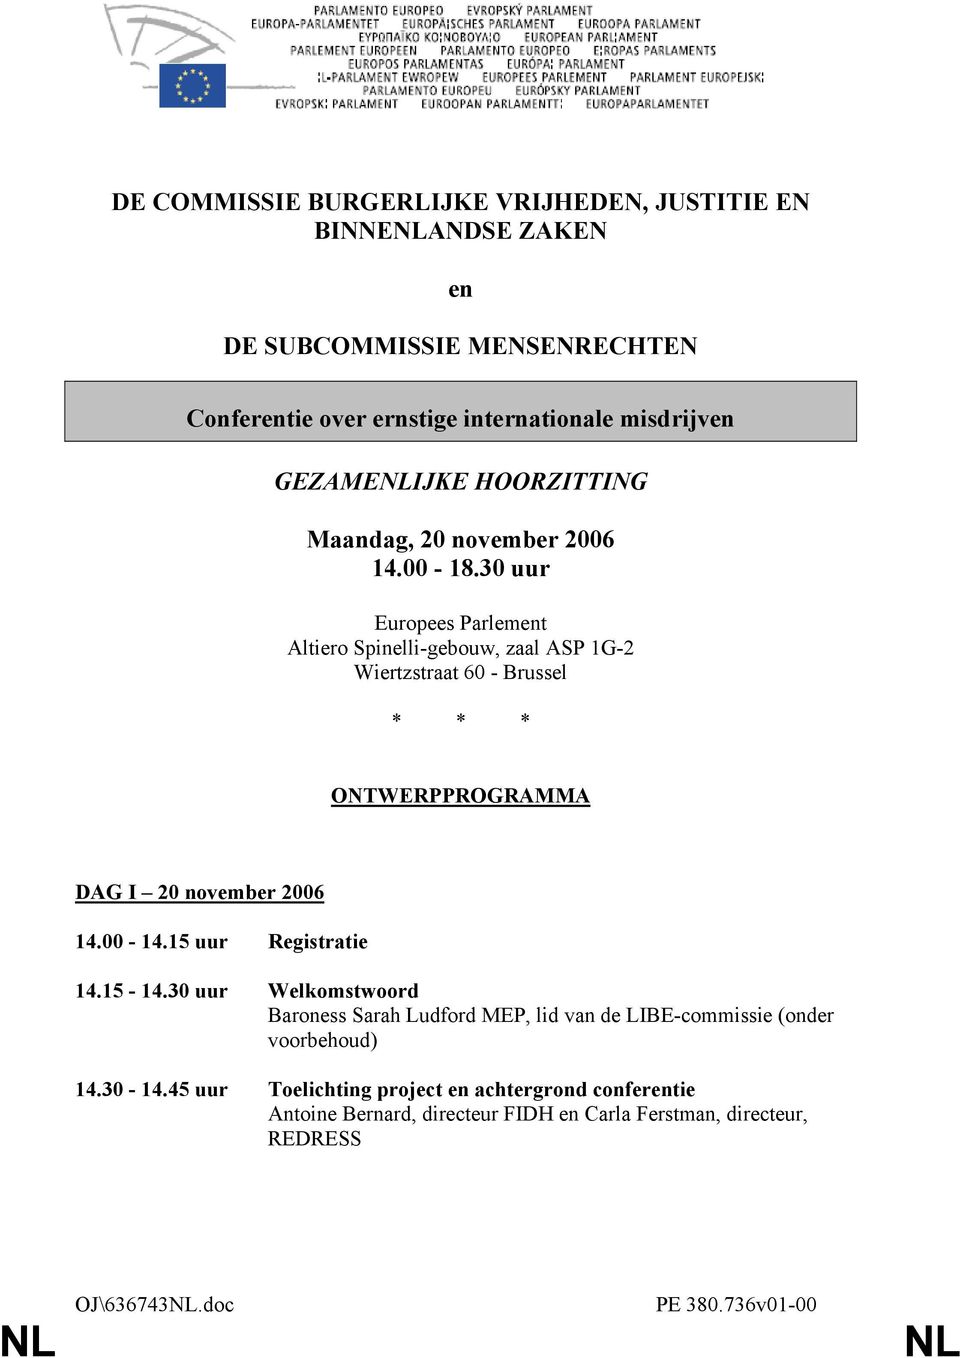 30 uur Altiero Spinelli-gebouw, zaal ASP 1G-2 - Brussel * * * ONTWERPPROGRAMMA DAG I 20 november 2006 14.00-14.15 uur Registratie 14.15-14.